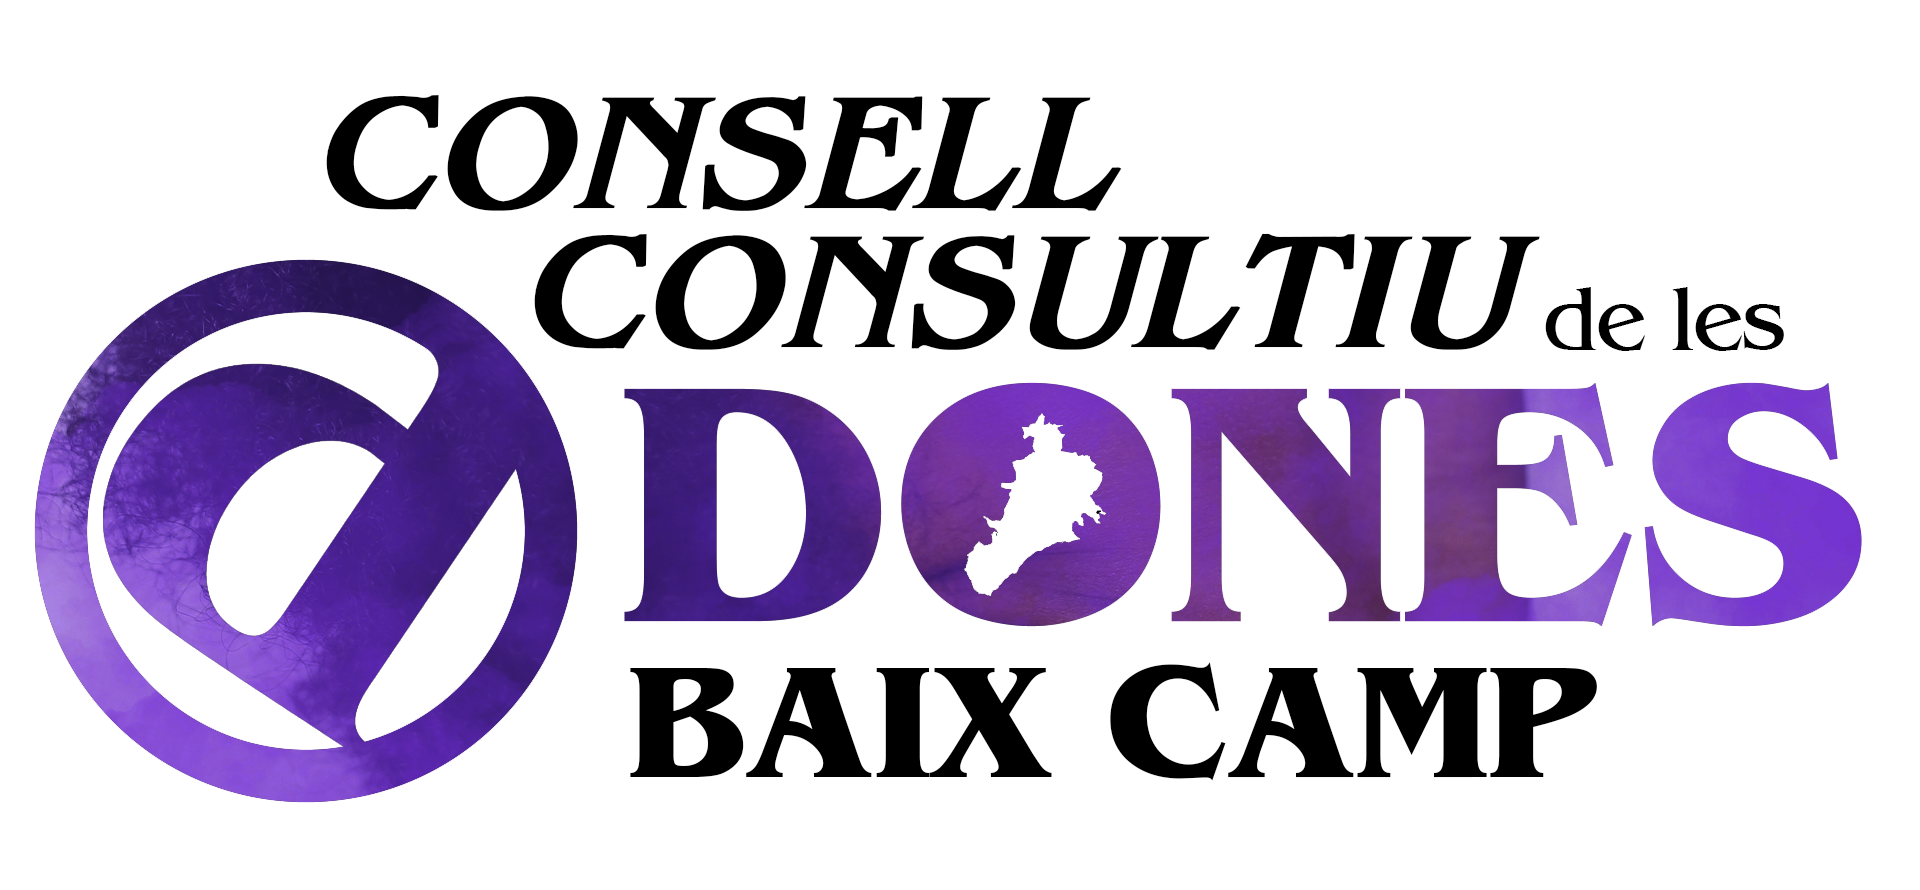 Consell Consultiu_logo